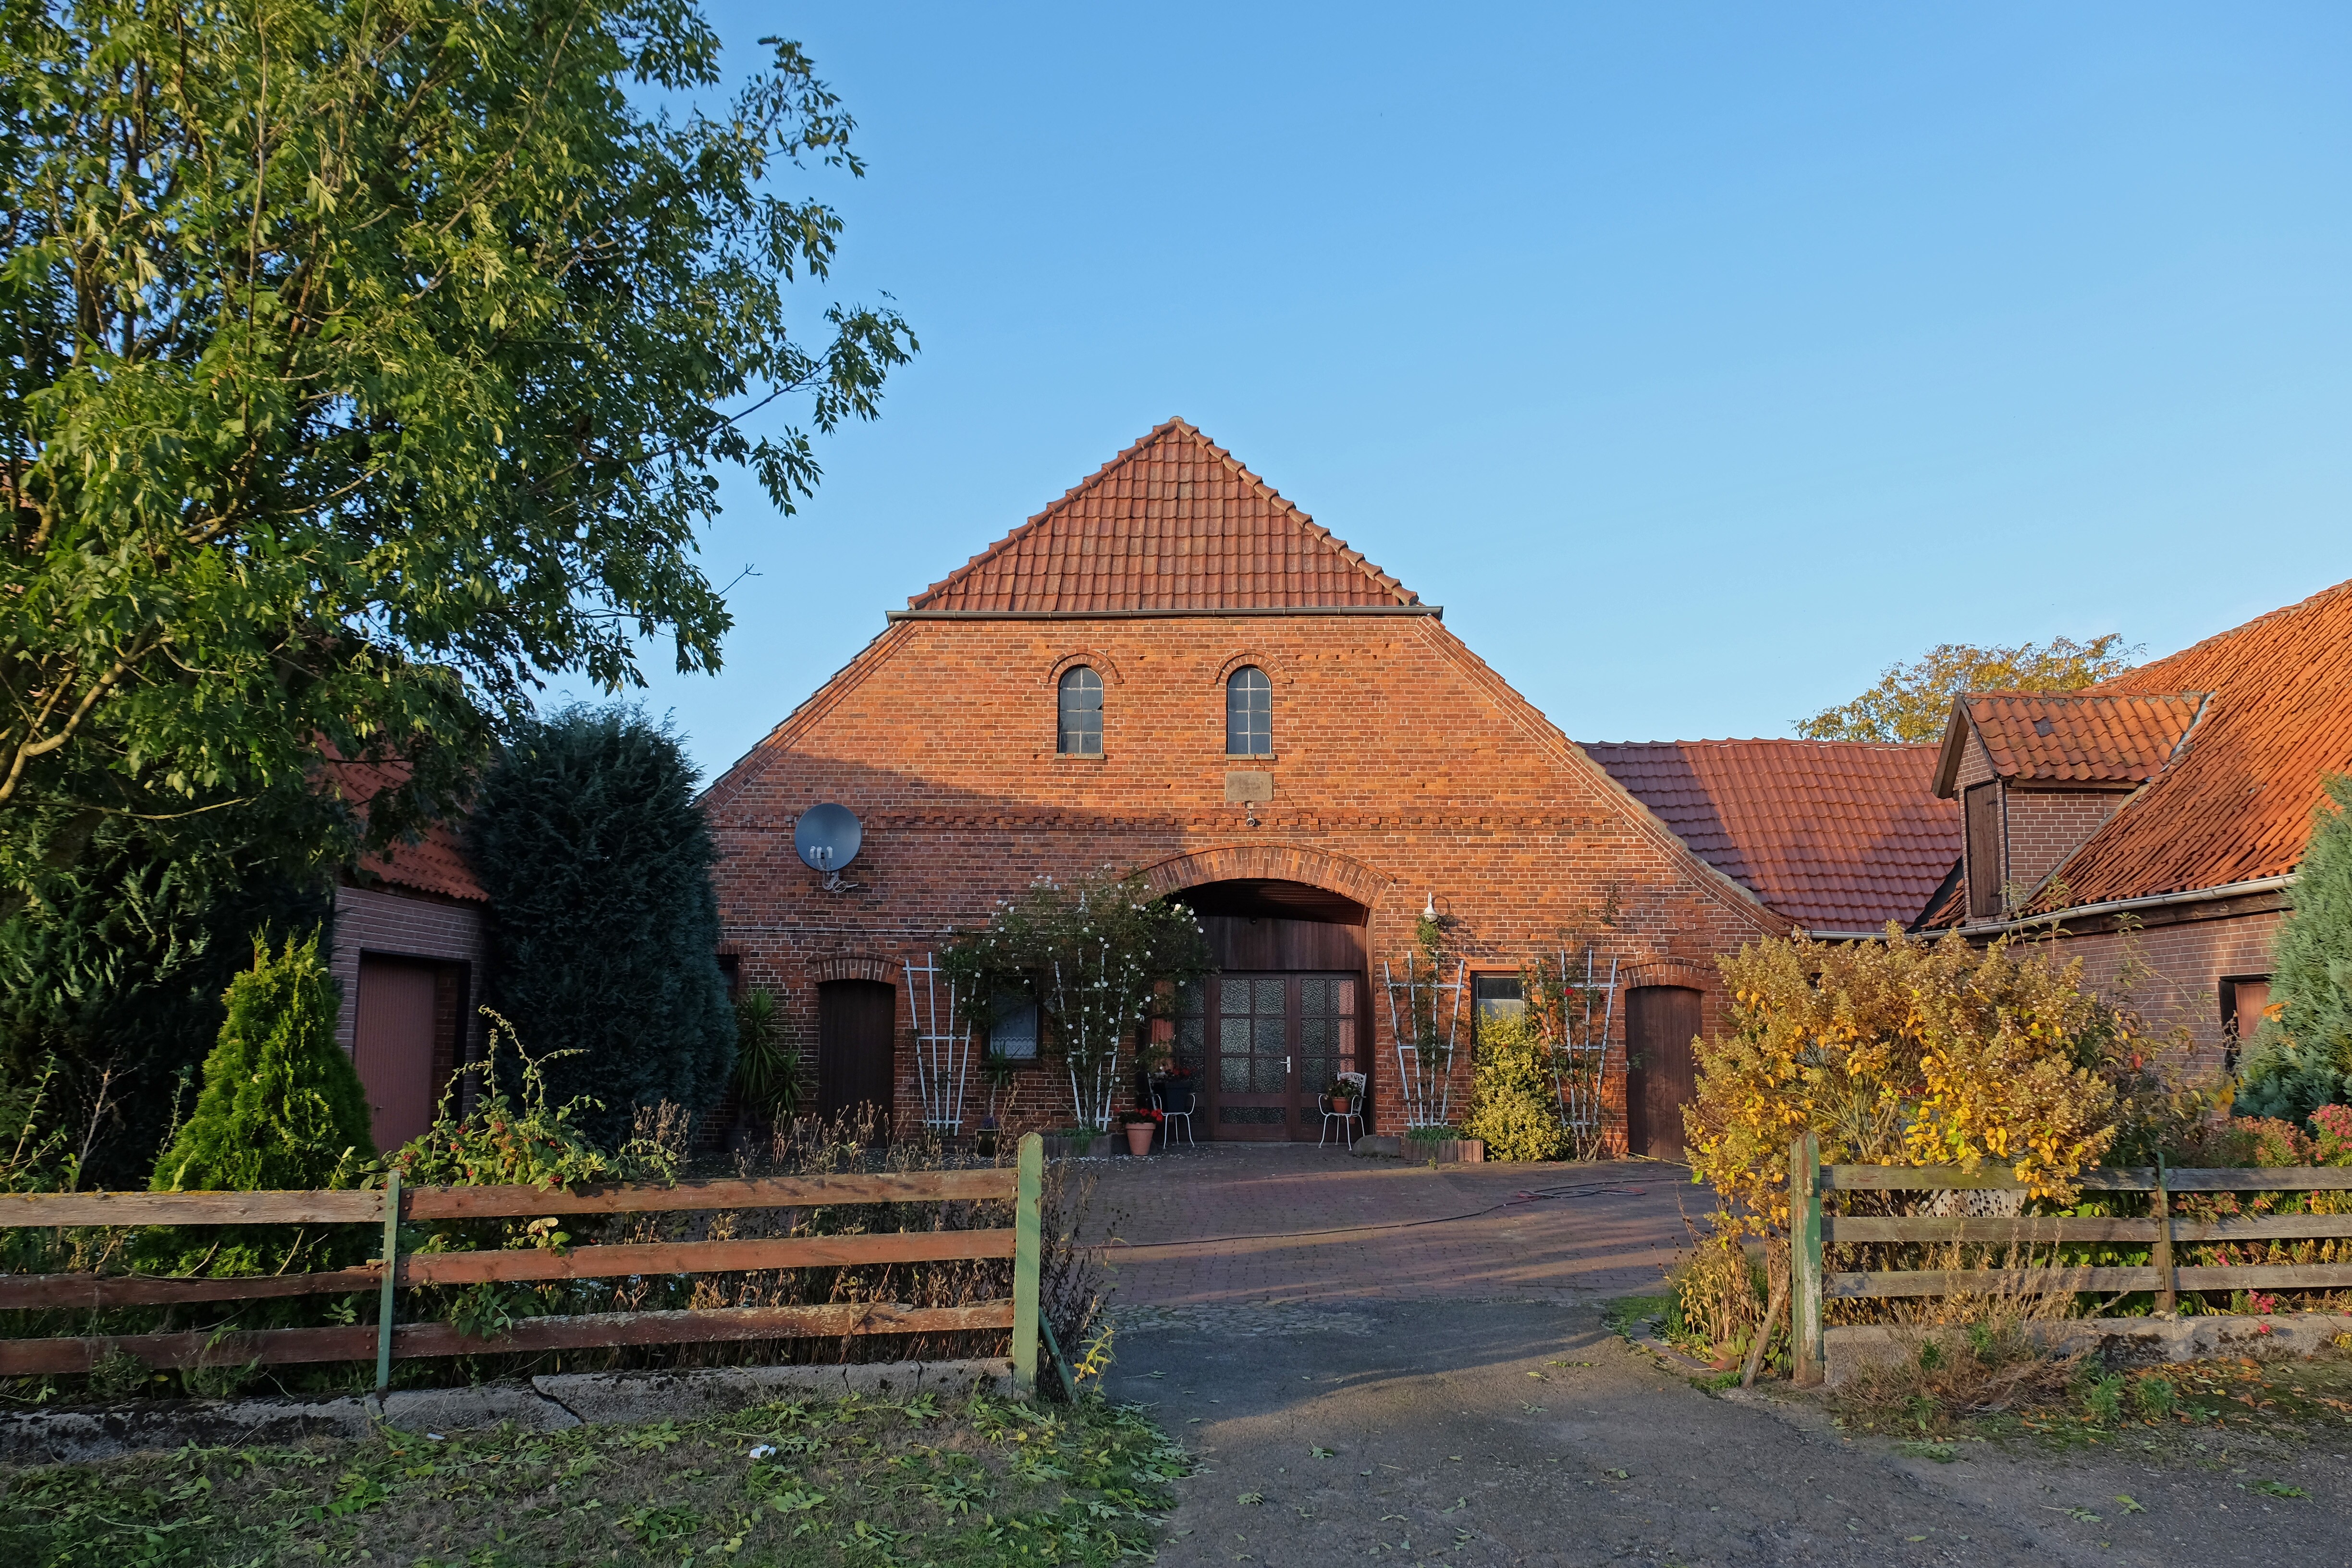 Gasthaus "Zur Eiche" in der Samtgemeinde Bruchhausen-Vilsen - Gem. Martfeld - OT Hustedt (Kreismuseum Syke CC BY-NC-SA)